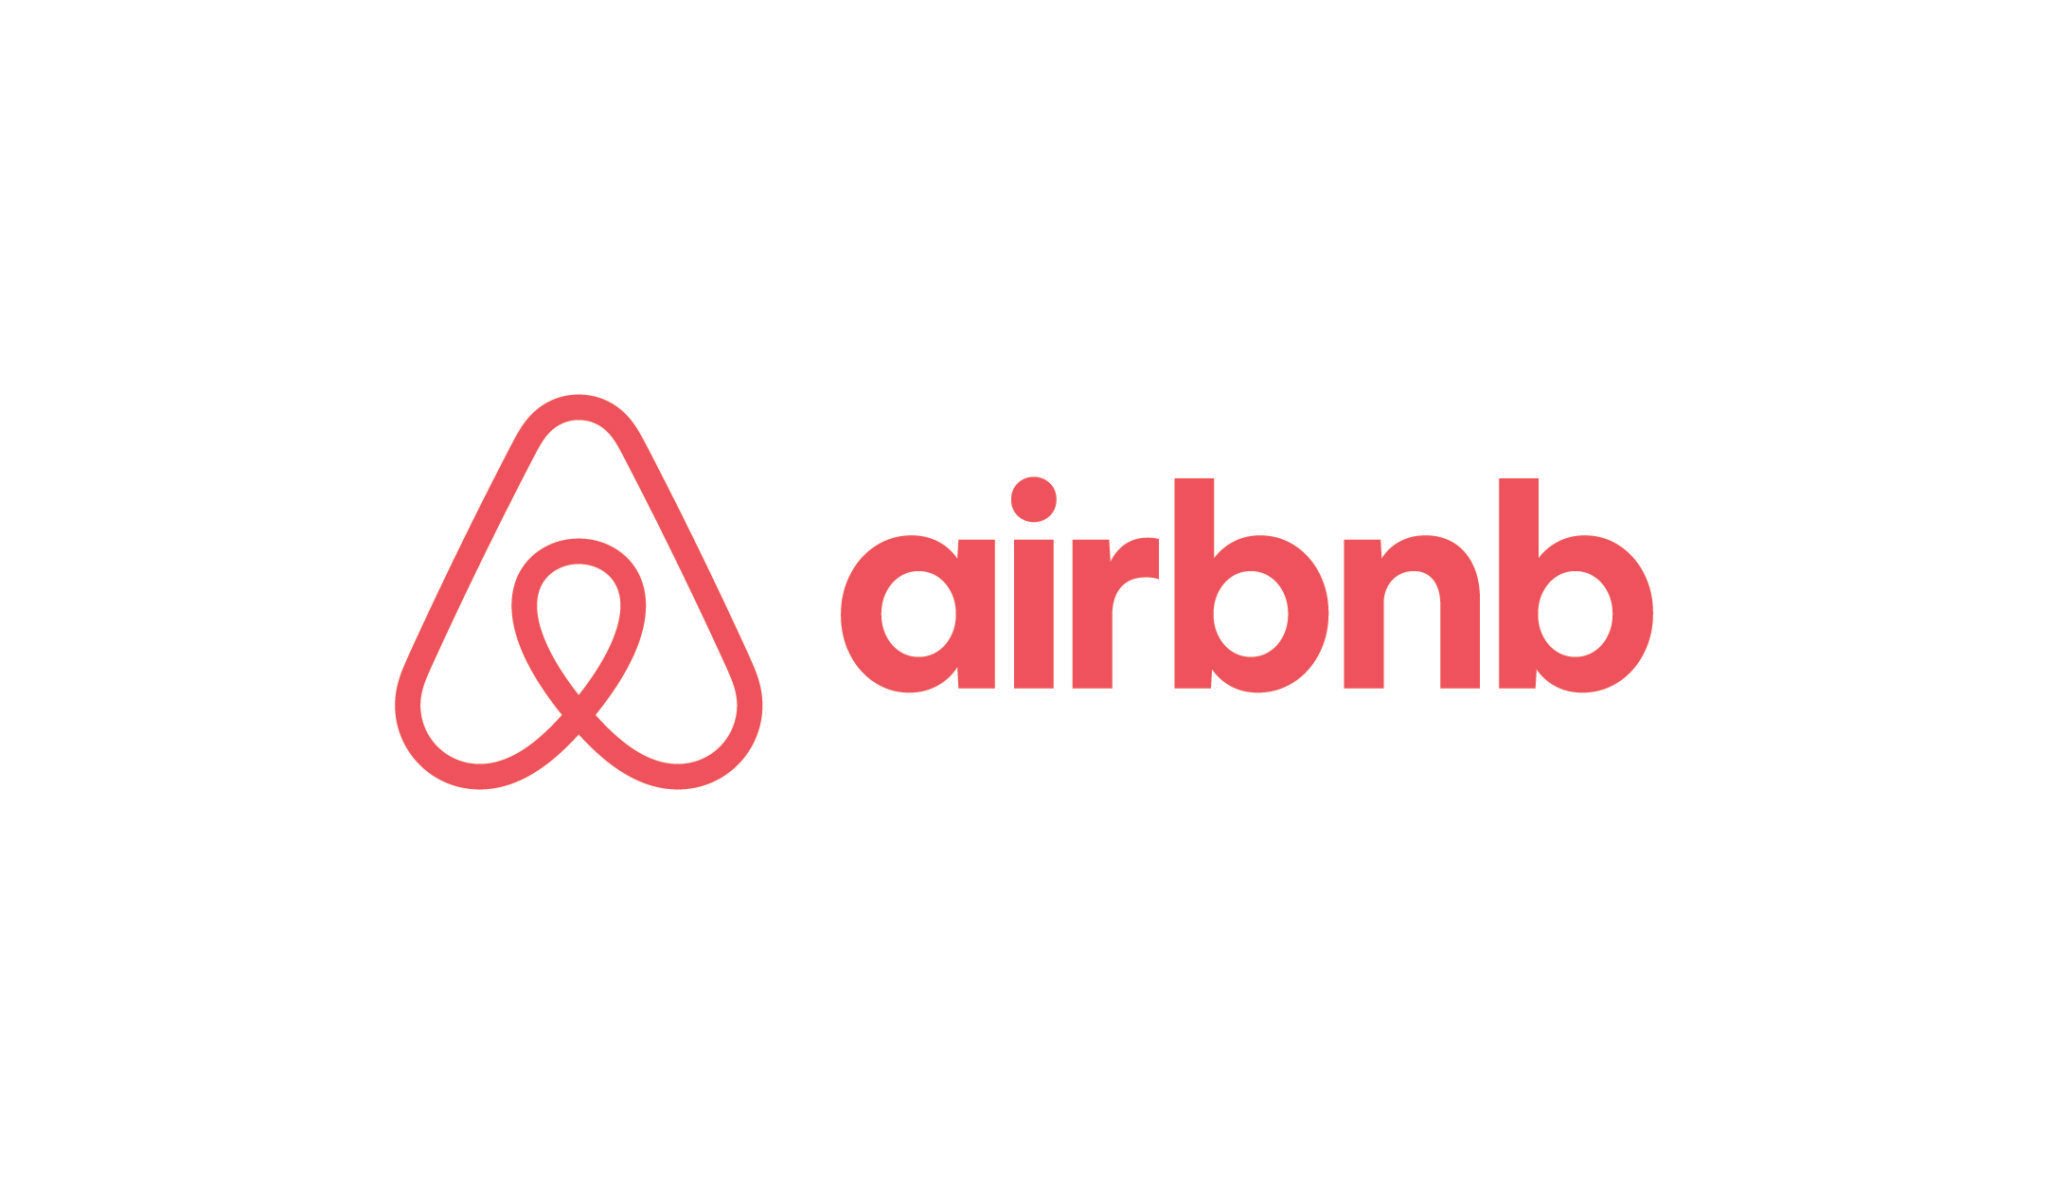 Imagem com fundo branco contendo a logo do Airbnb em vermelho.